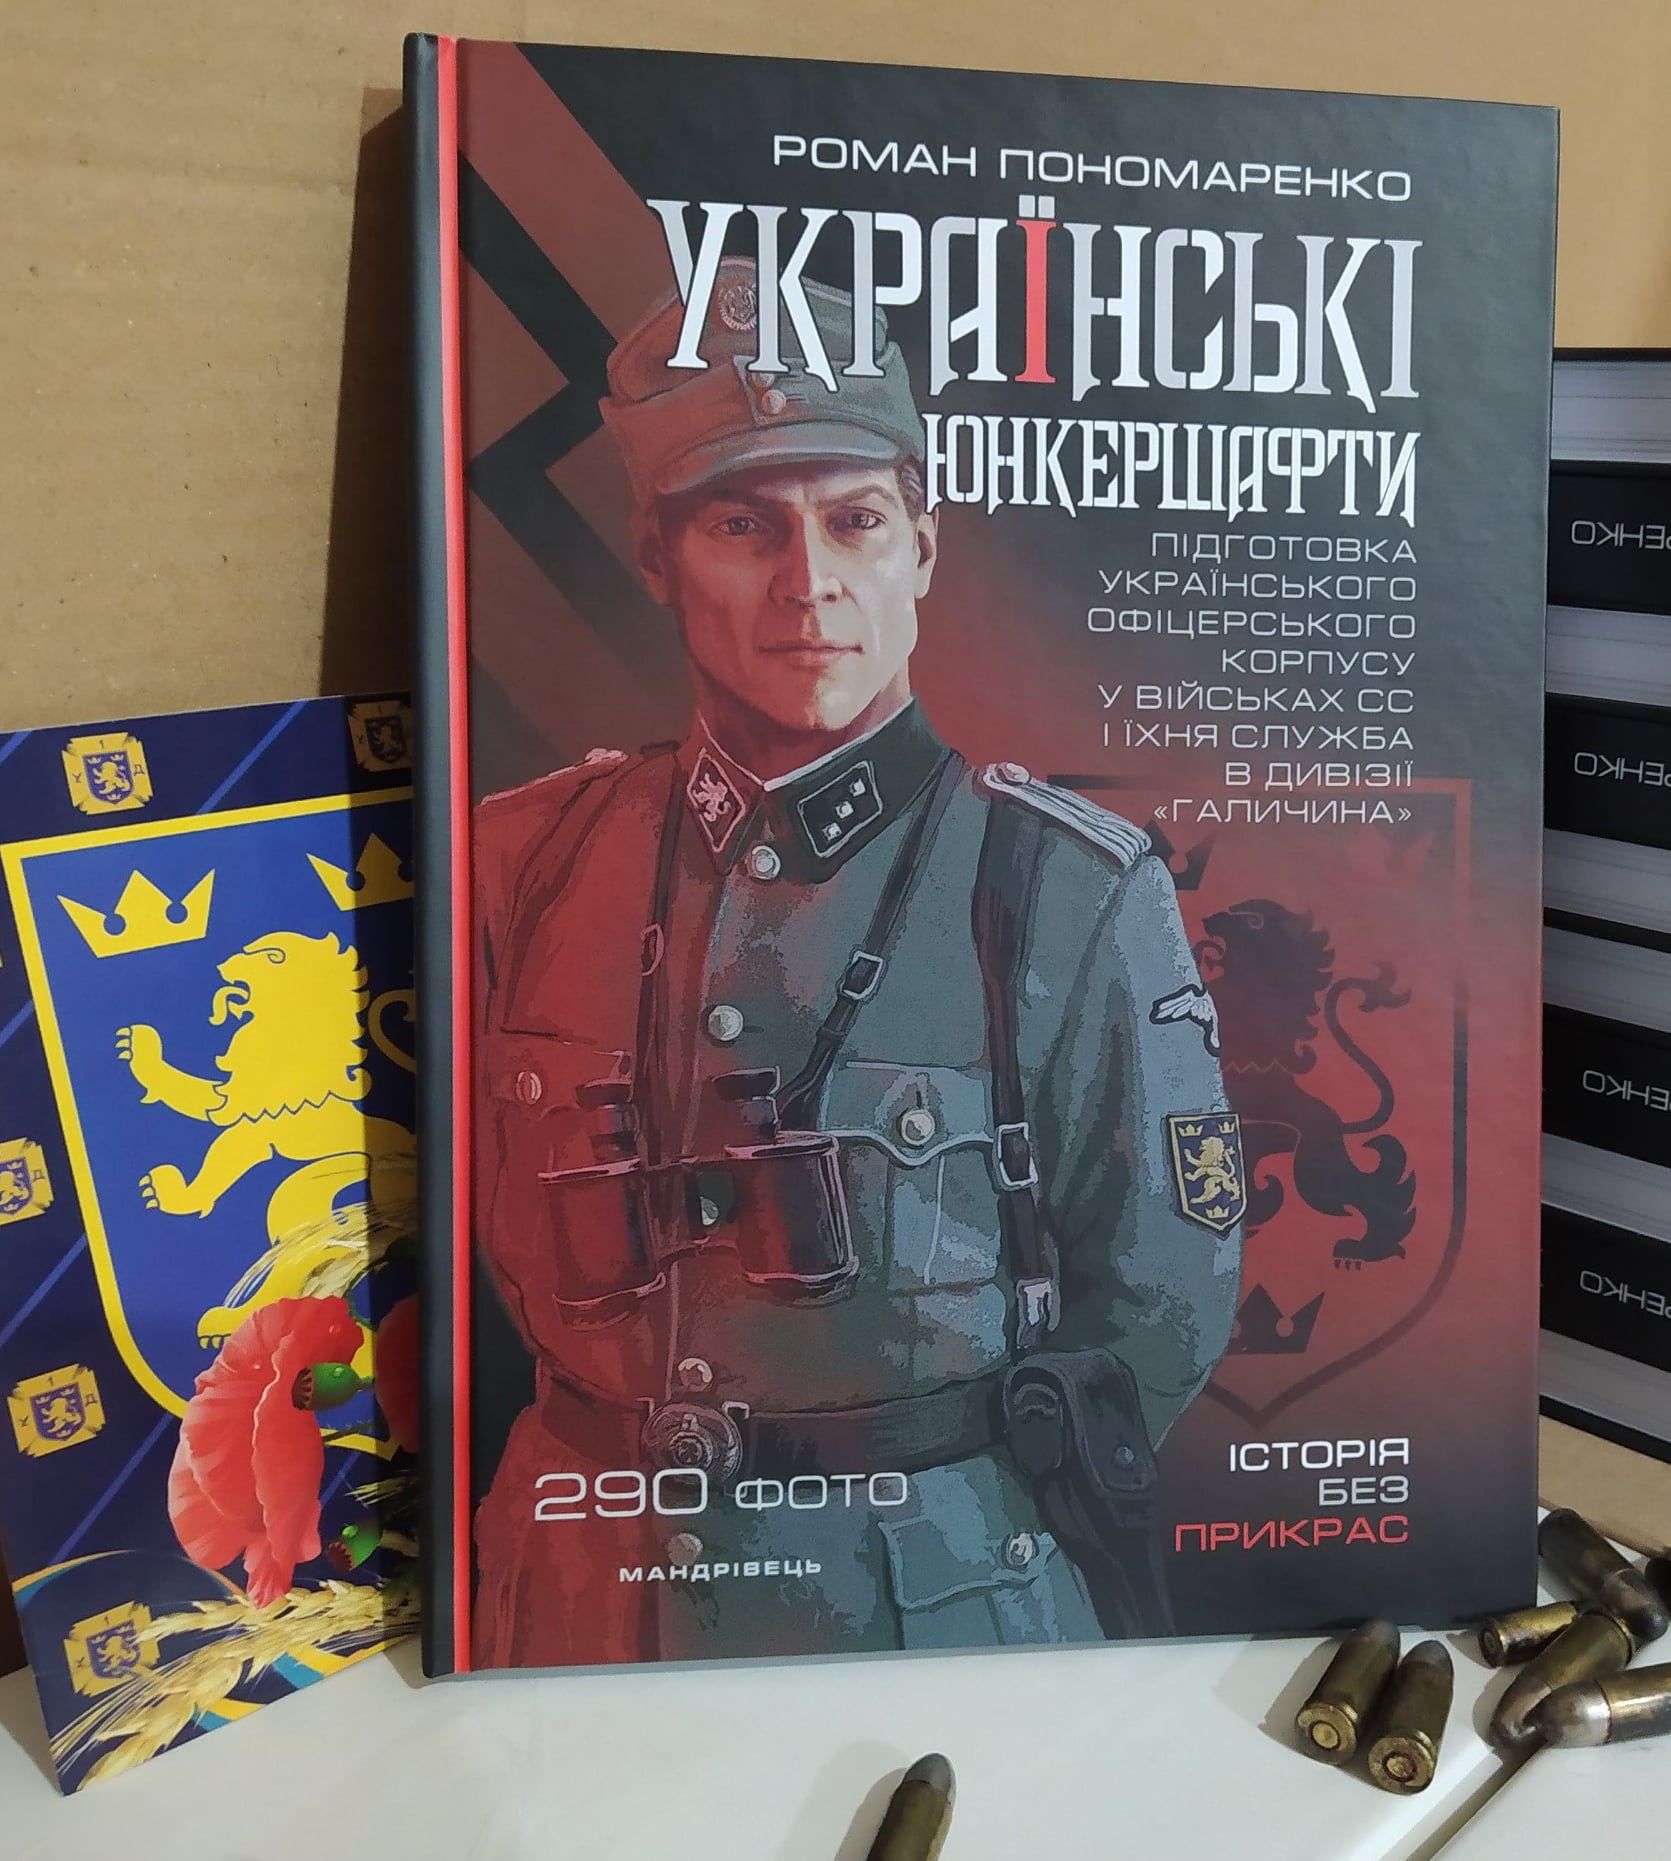 Книга хохлы. Книги украинских националистов. Украинские нацистские книги. Книги про СС.